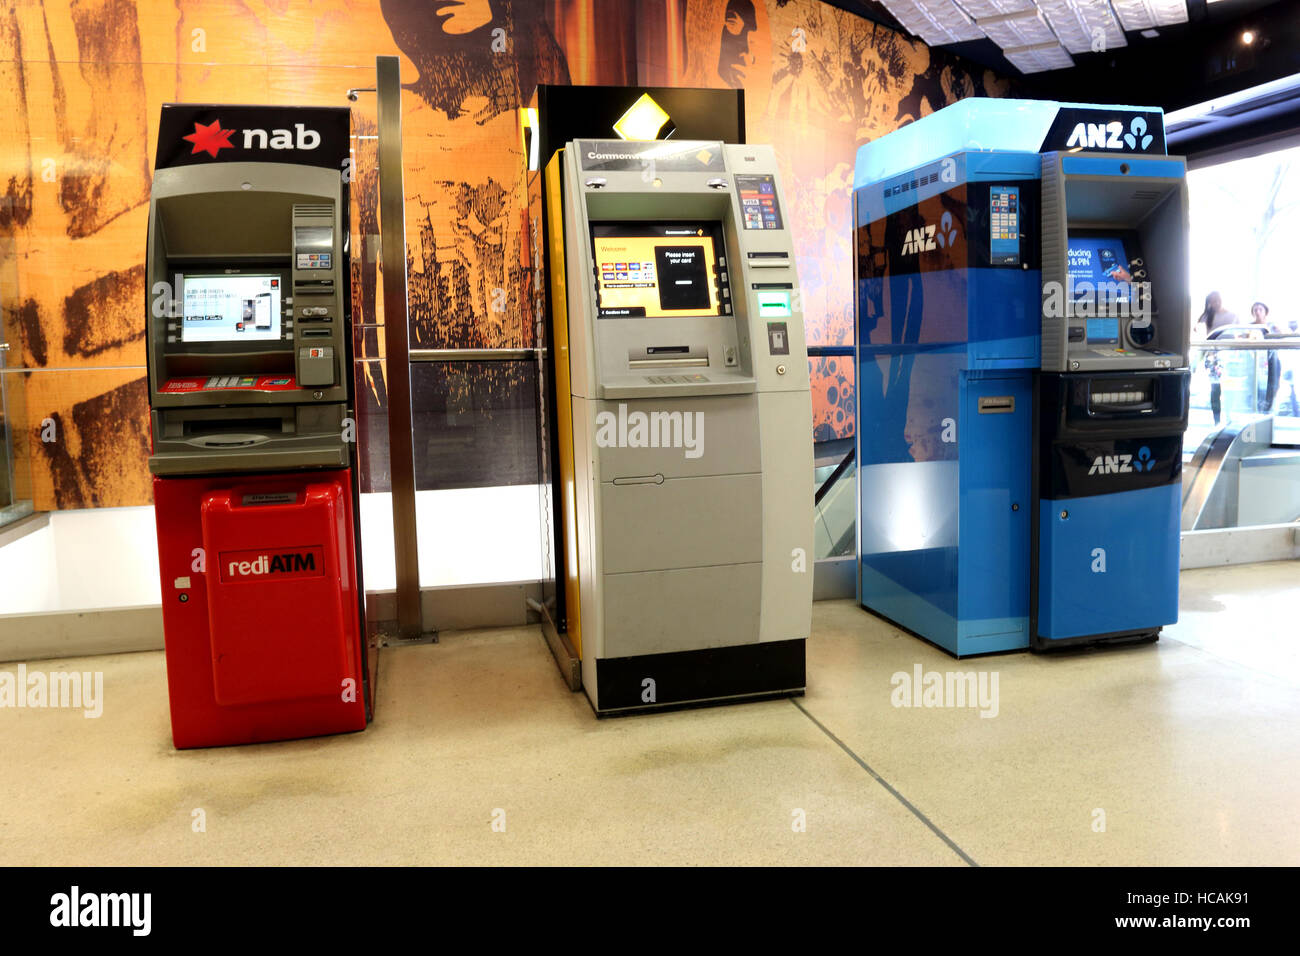 ATM machine of Major banks in Melbourne Australia Stock Photo